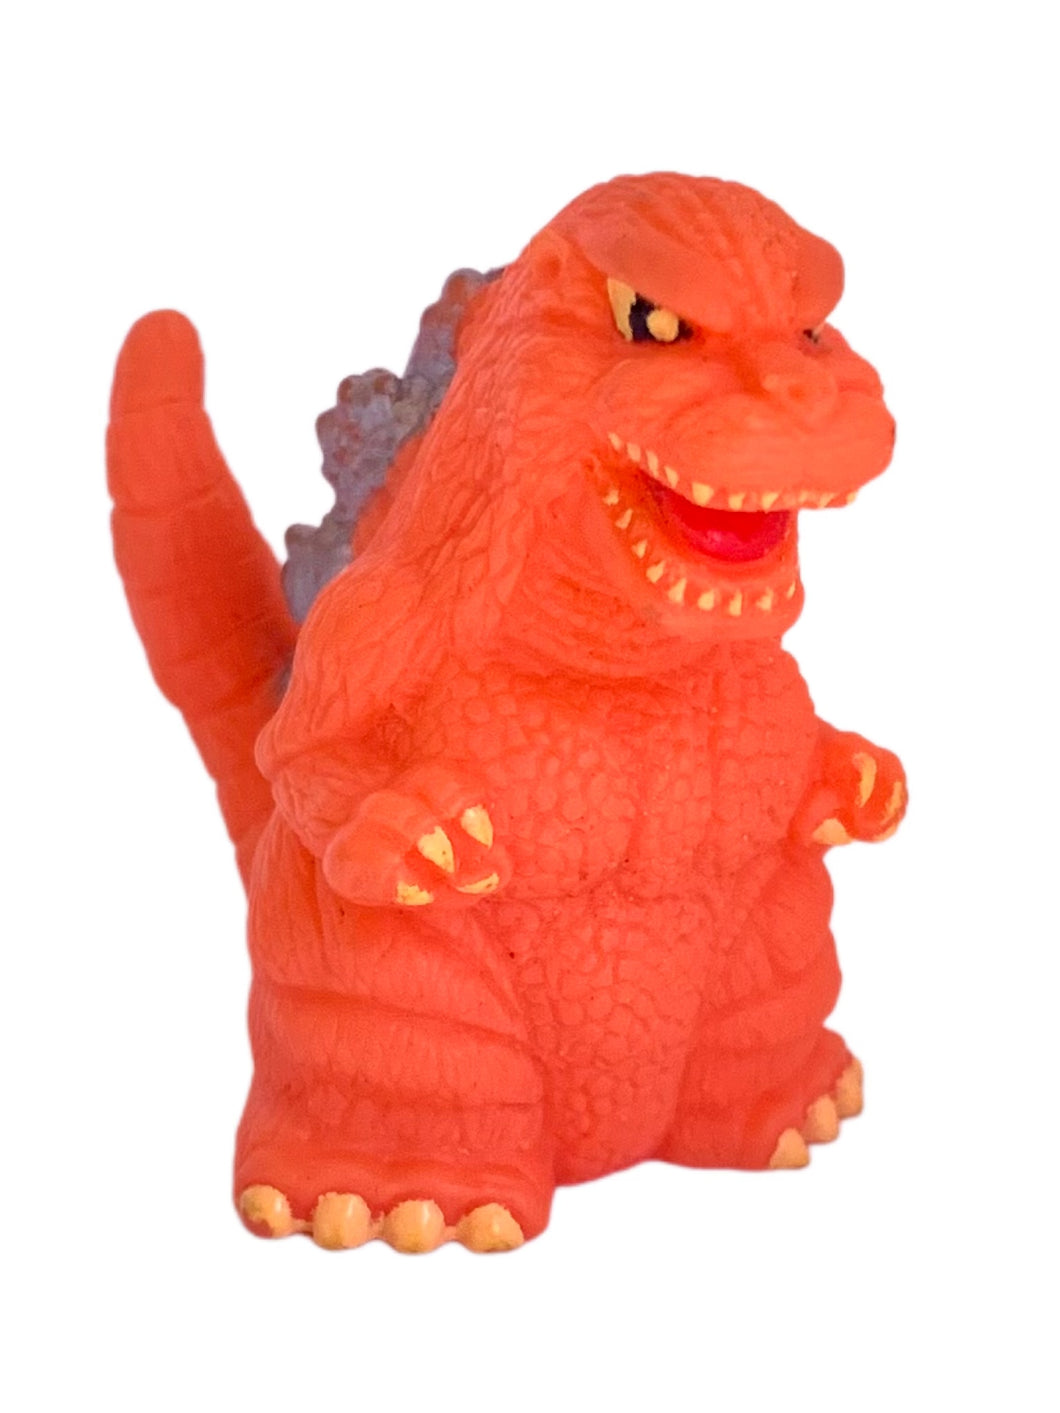 Gojira - Burning Godzilla - Godzilla All-Out Attack - Trading Figure